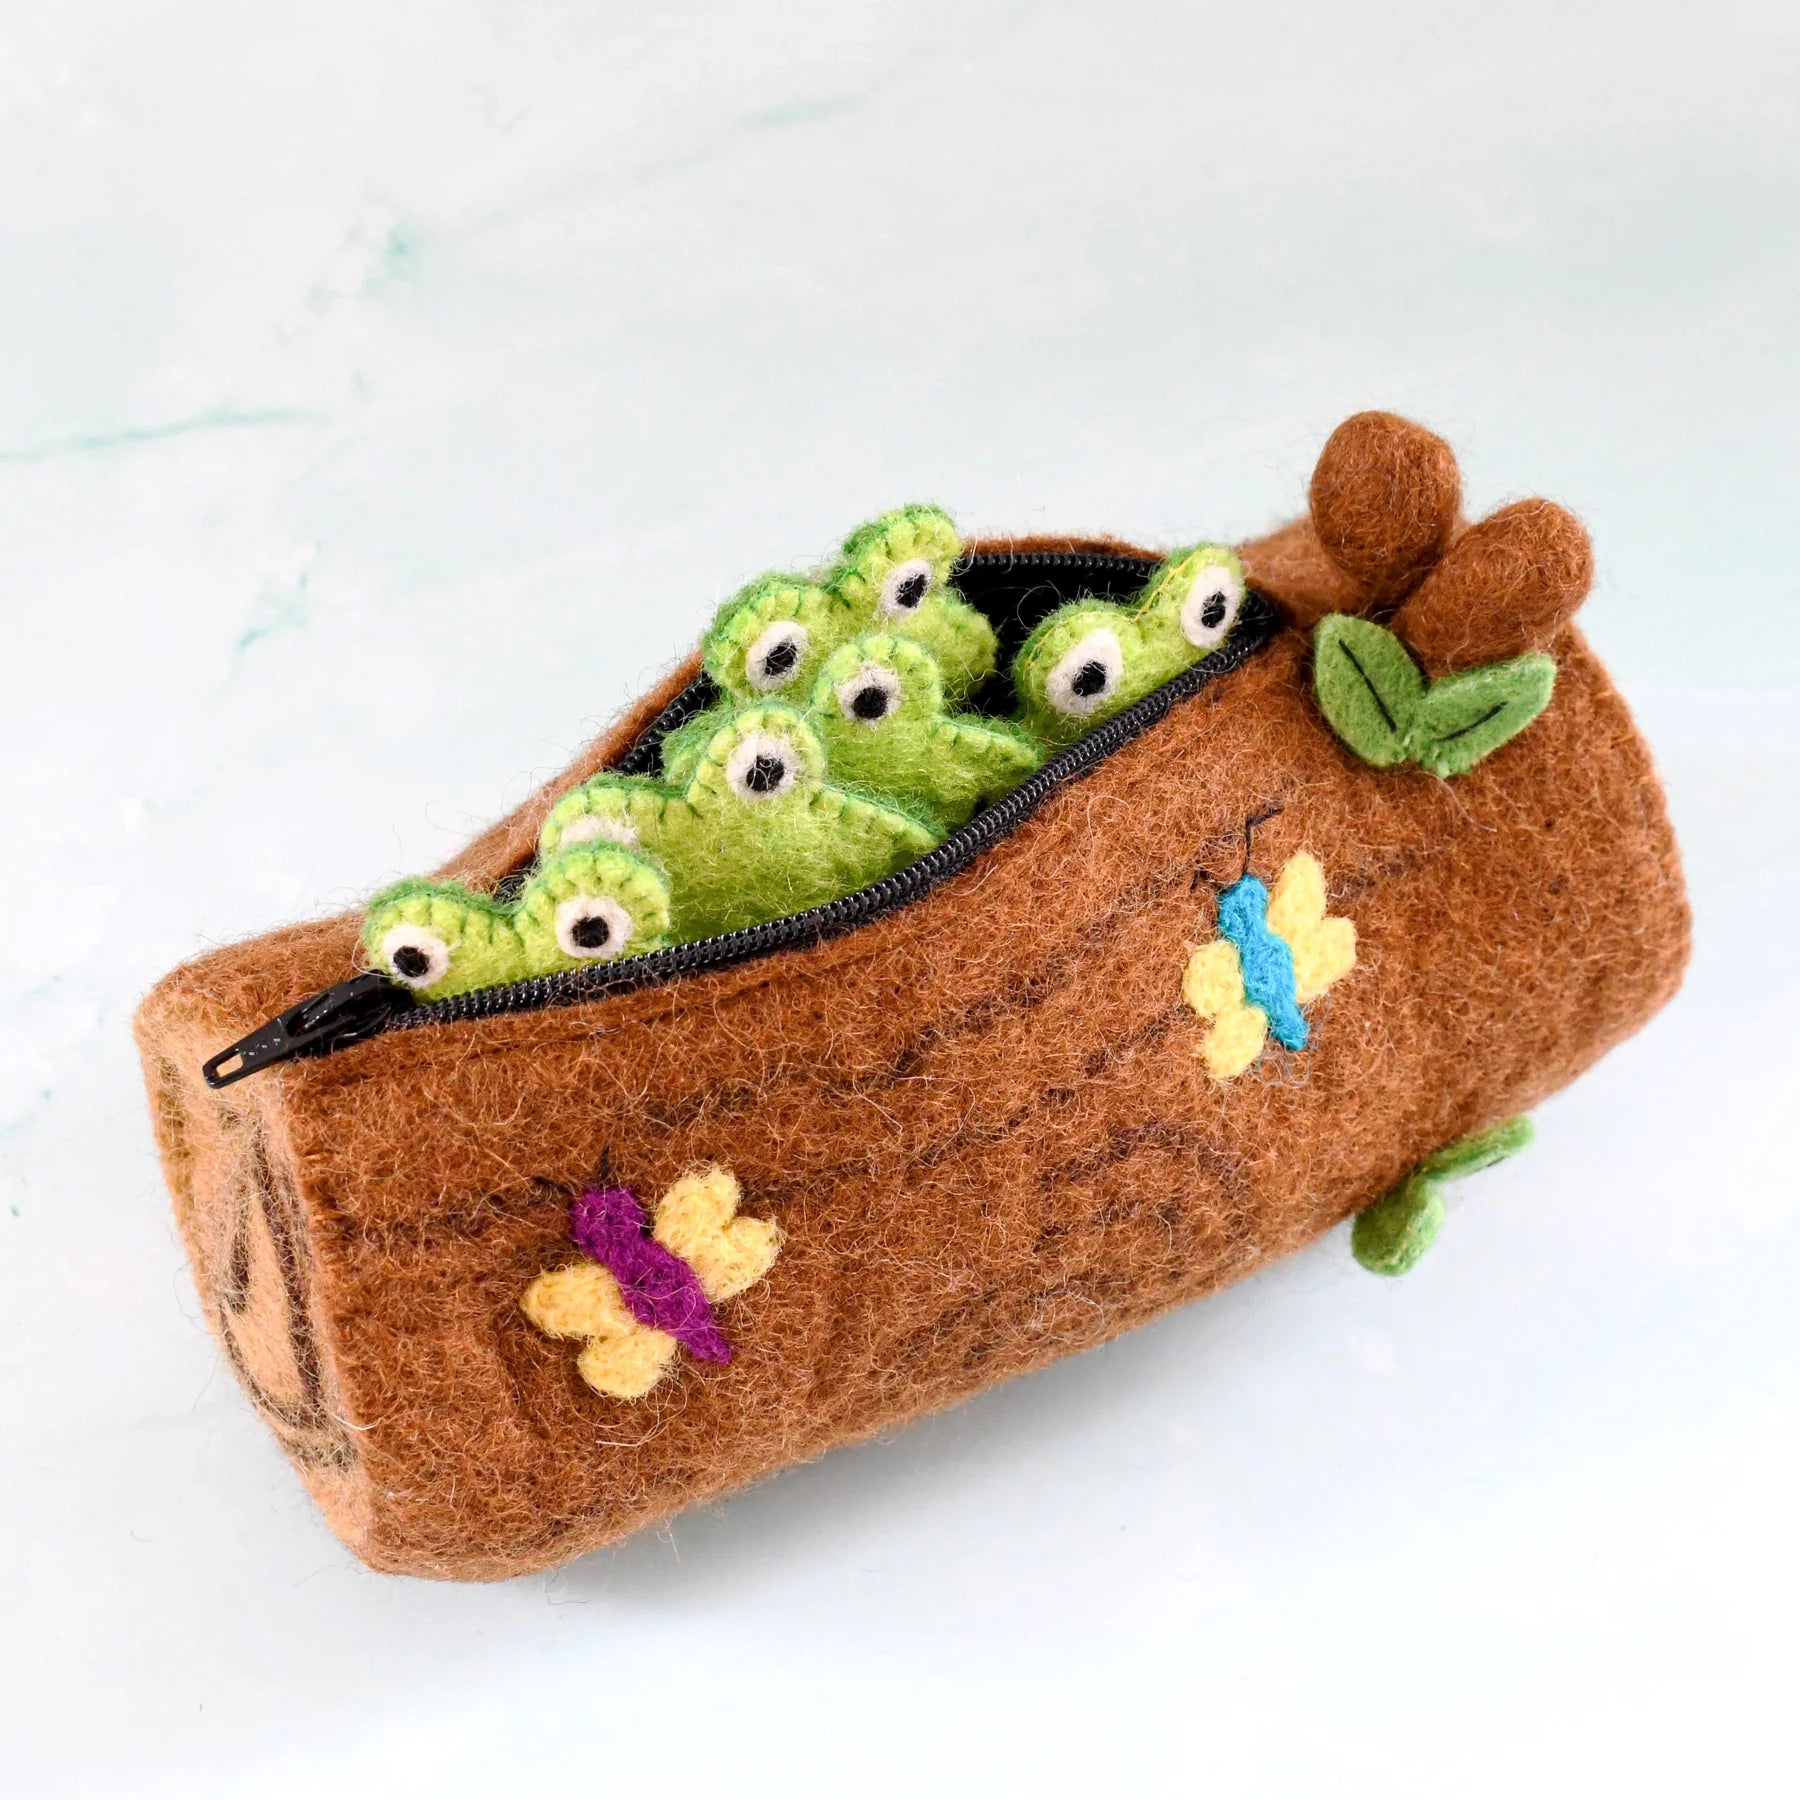 Tara Treasures Five Little Speckled Frogs with Log Bag Finger Puppet Set